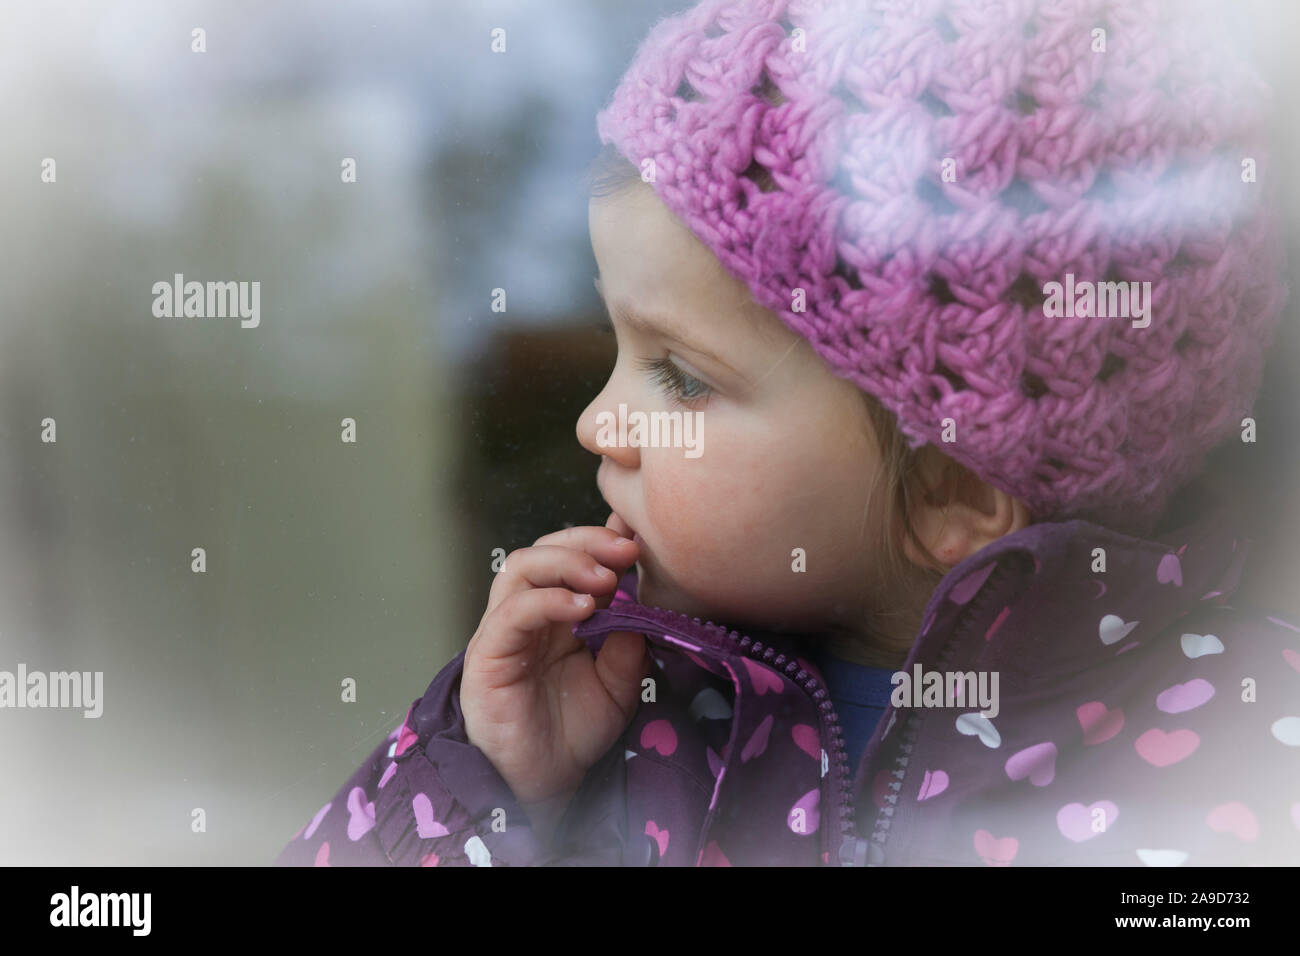 Mädchen mit rosa Mütze und Jacke stehen am Fenster suchen, den Finger auf den Mund, Kopf hoch Stockfoto